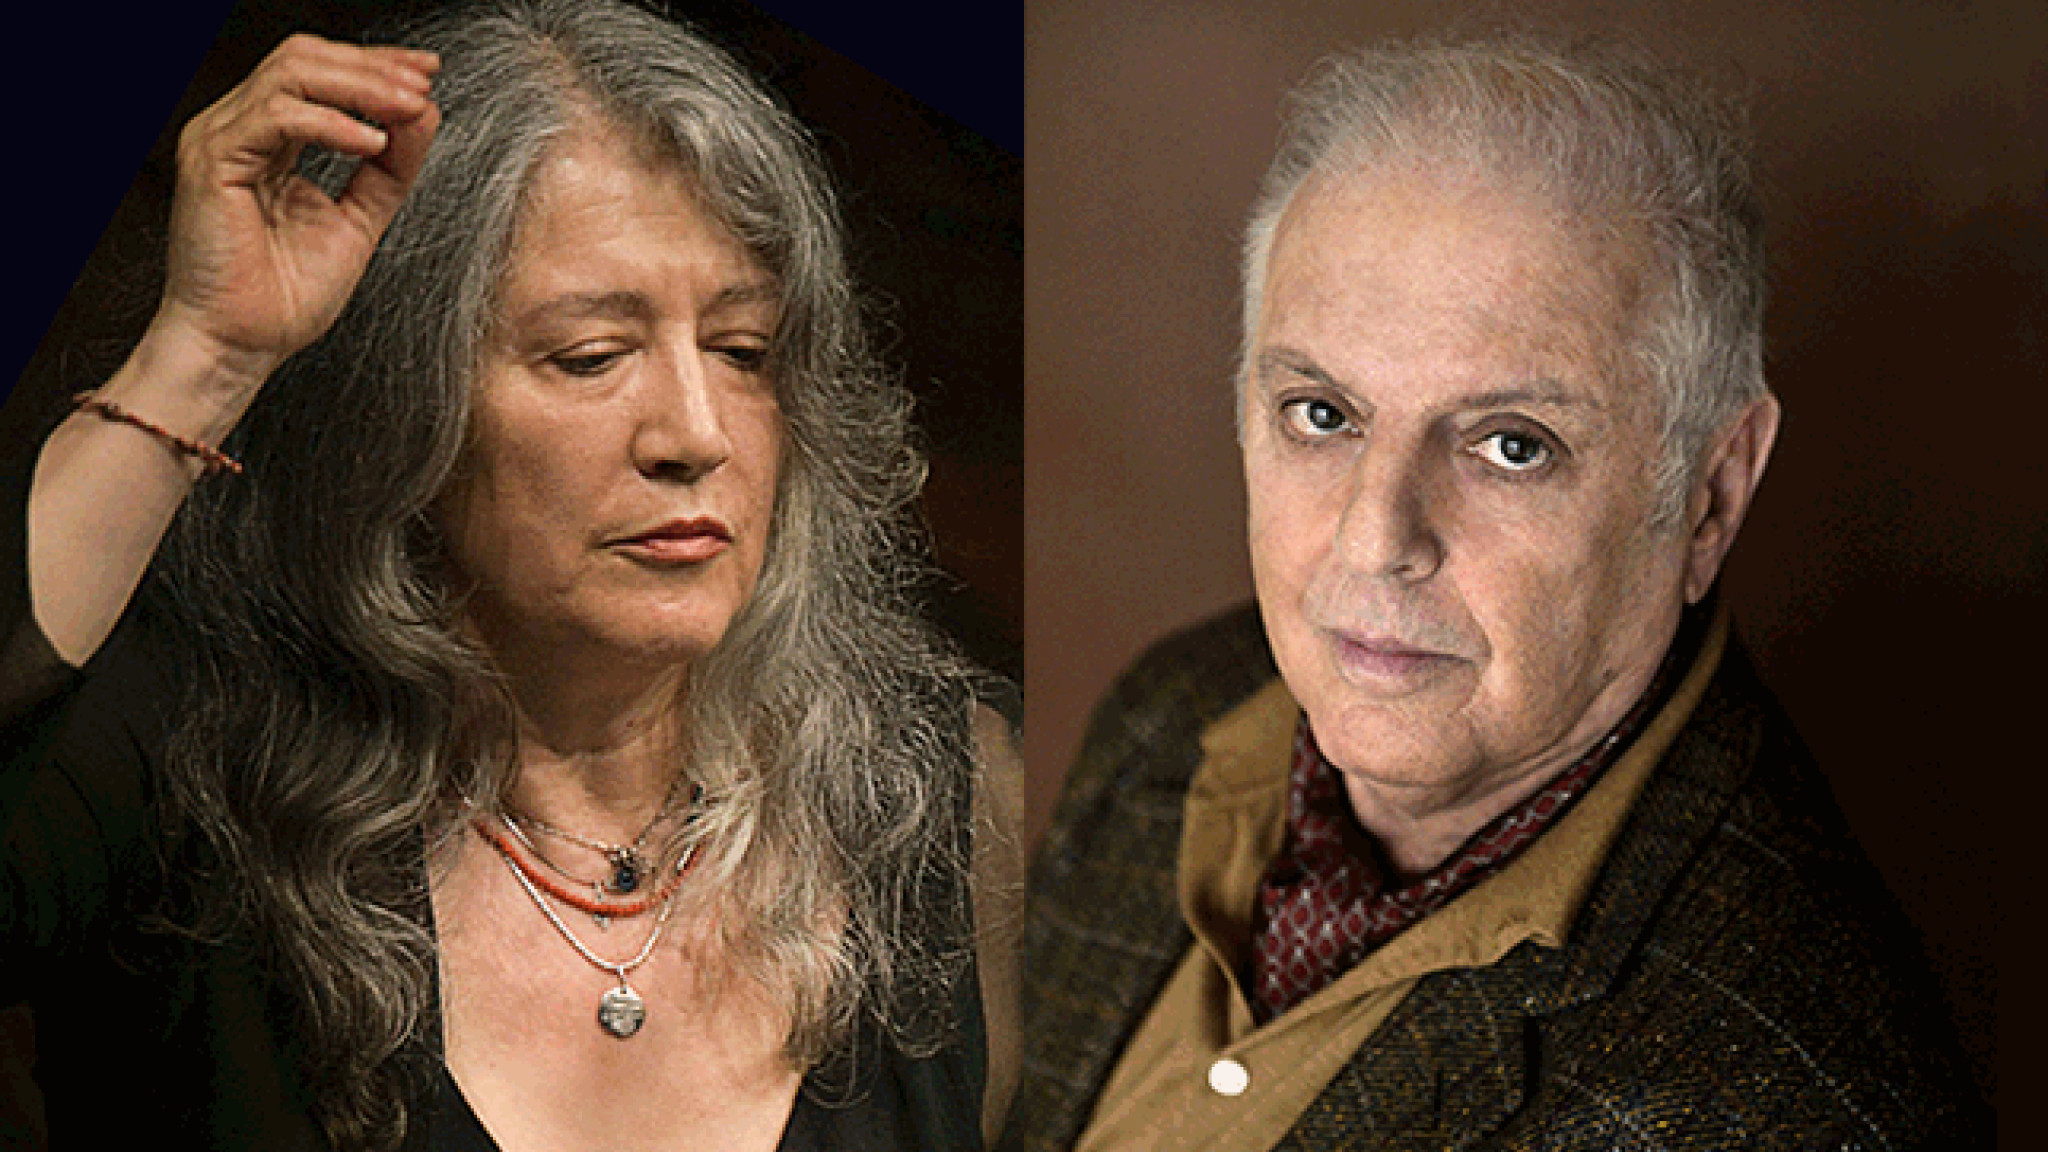 Gipfeltreffen am Klavier – Martha Argerich und Daniel Barenboim